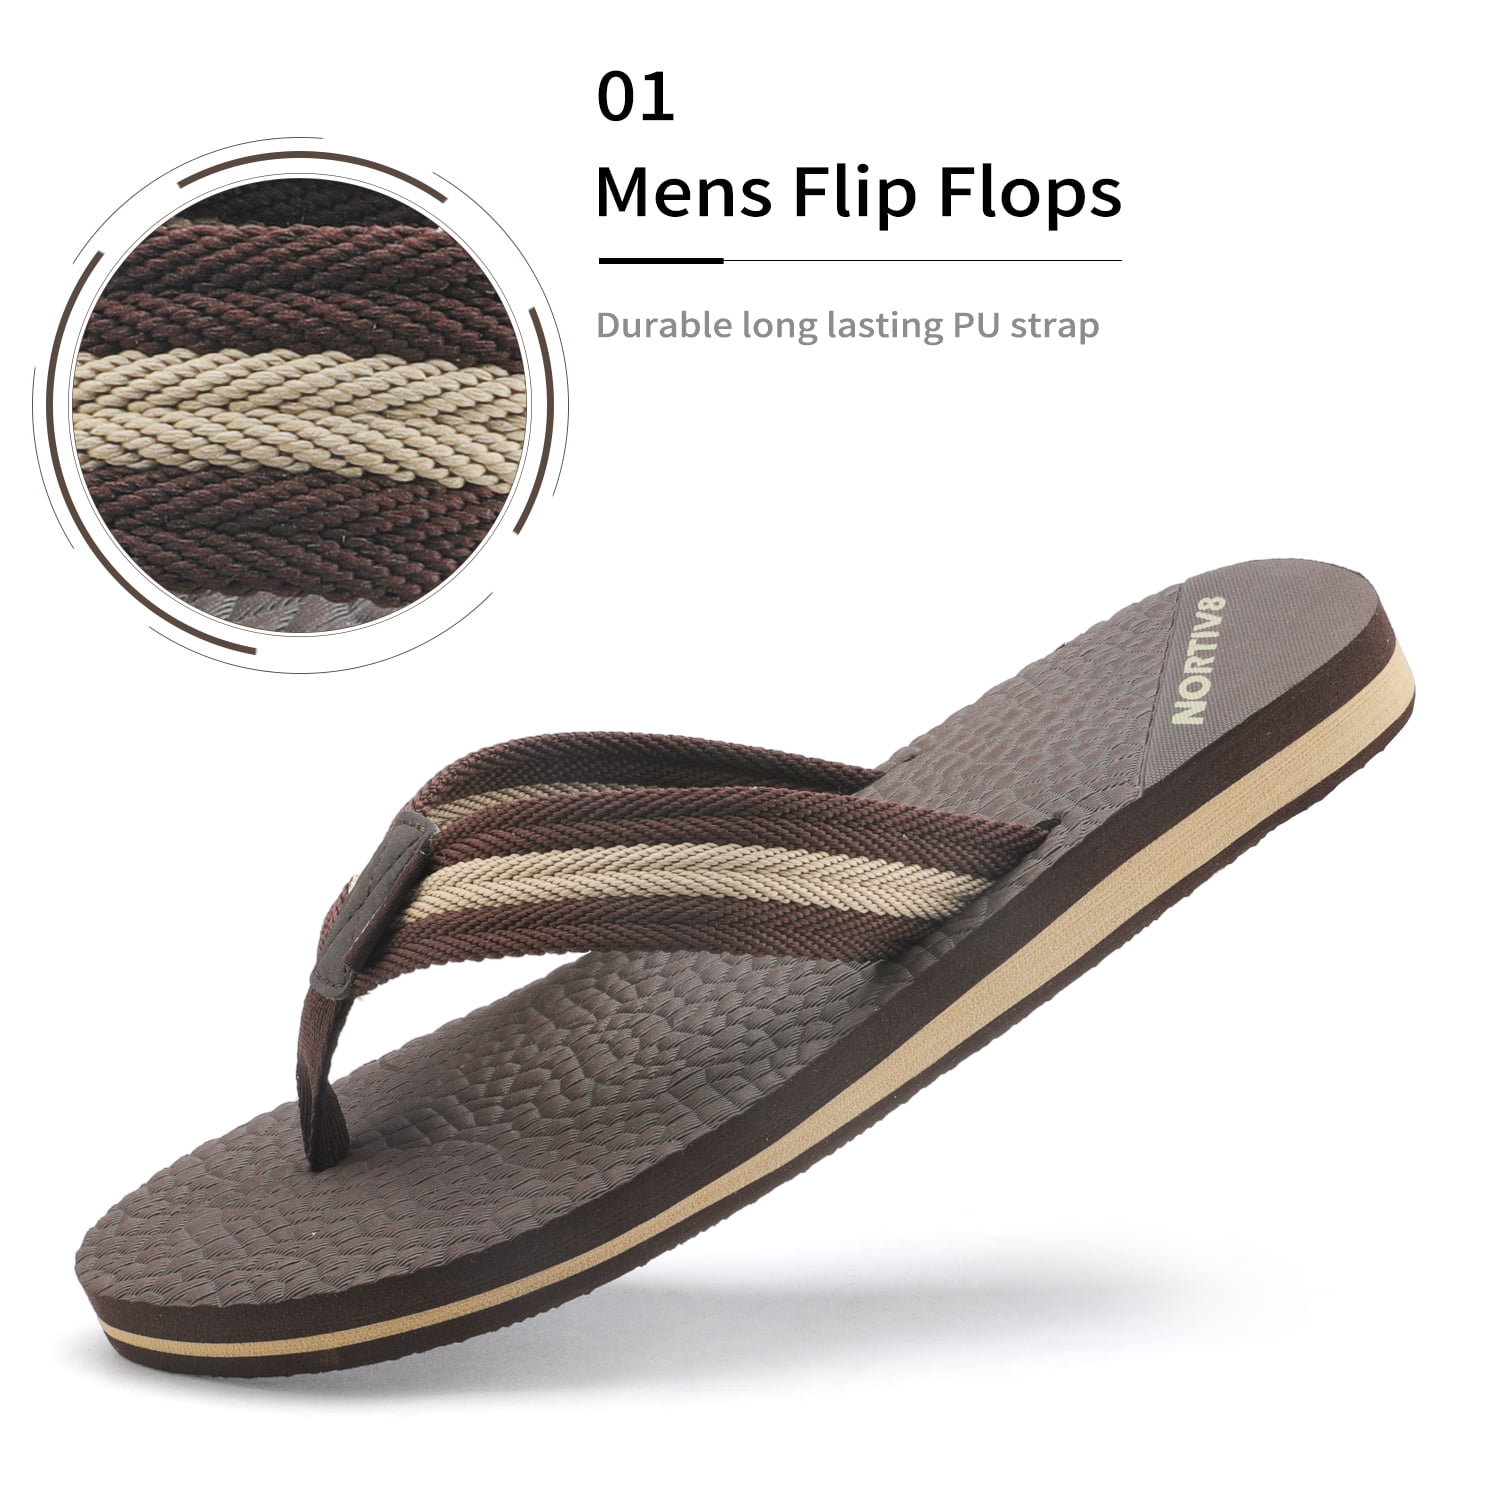 NORTIV 8 Mens Flip Flops Thong Sandals Comfortable Light Weight Beach Sandal